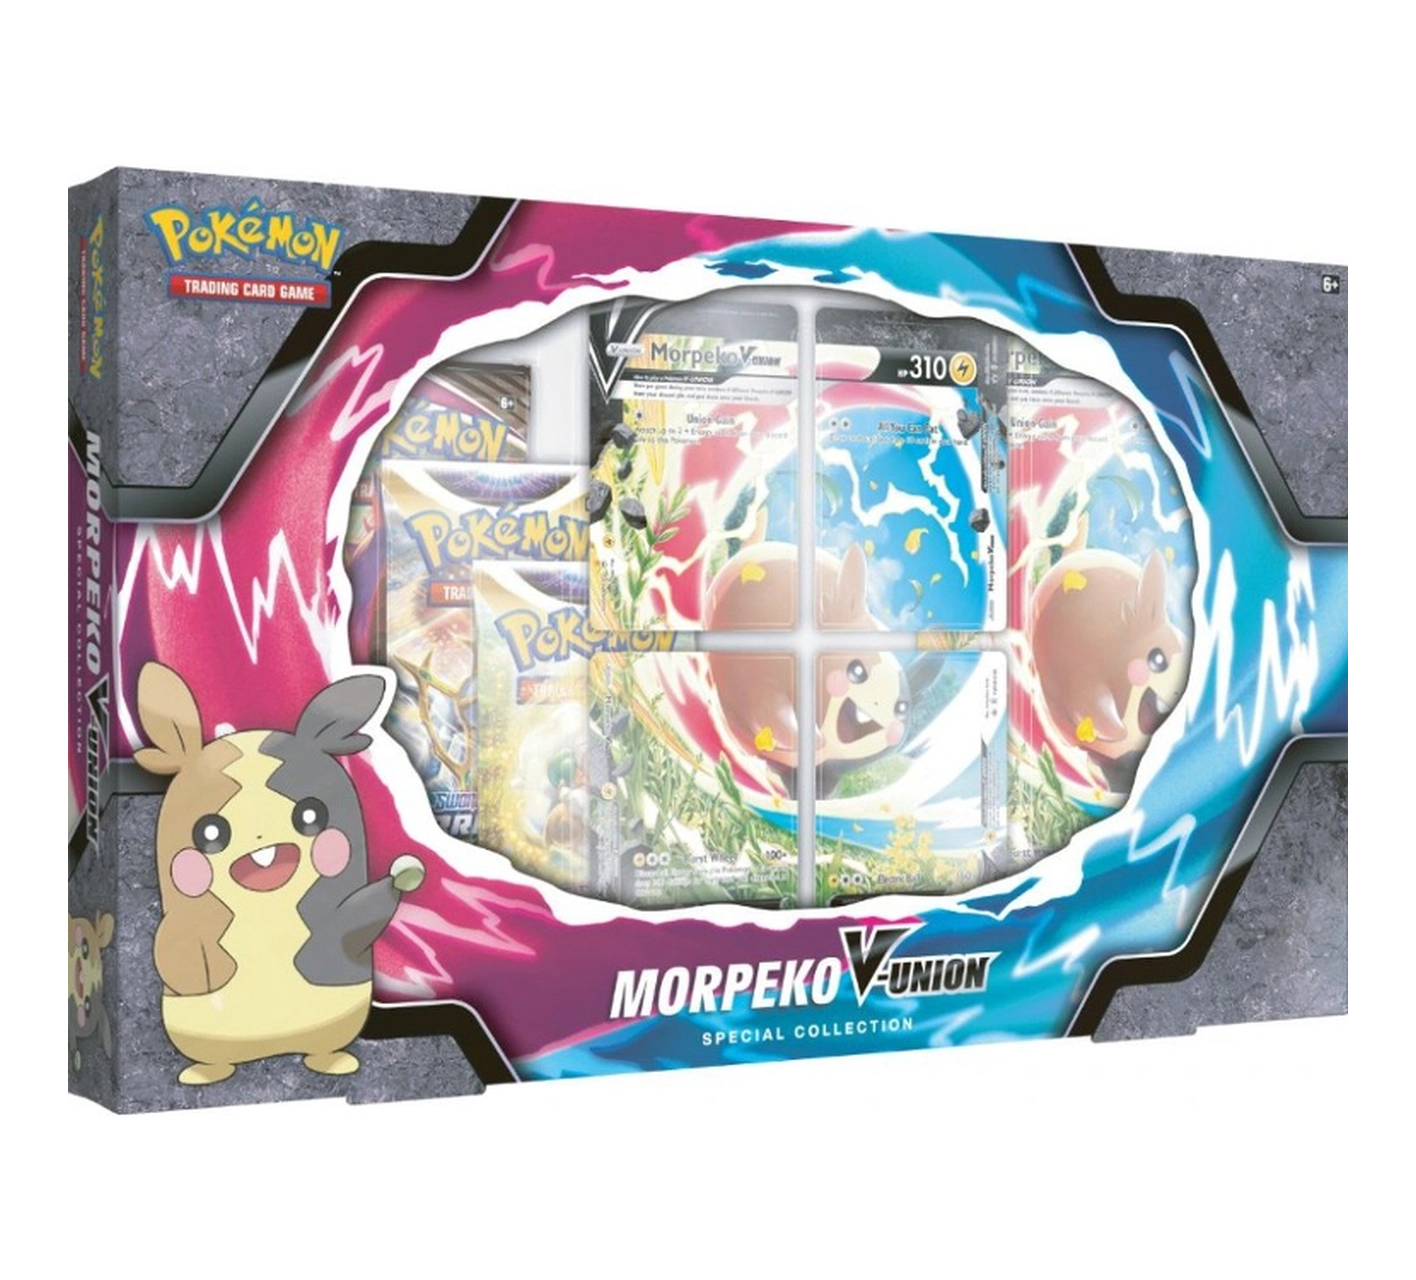 Pokémon TCG - Colección especial Morpeko V-Union (Español)